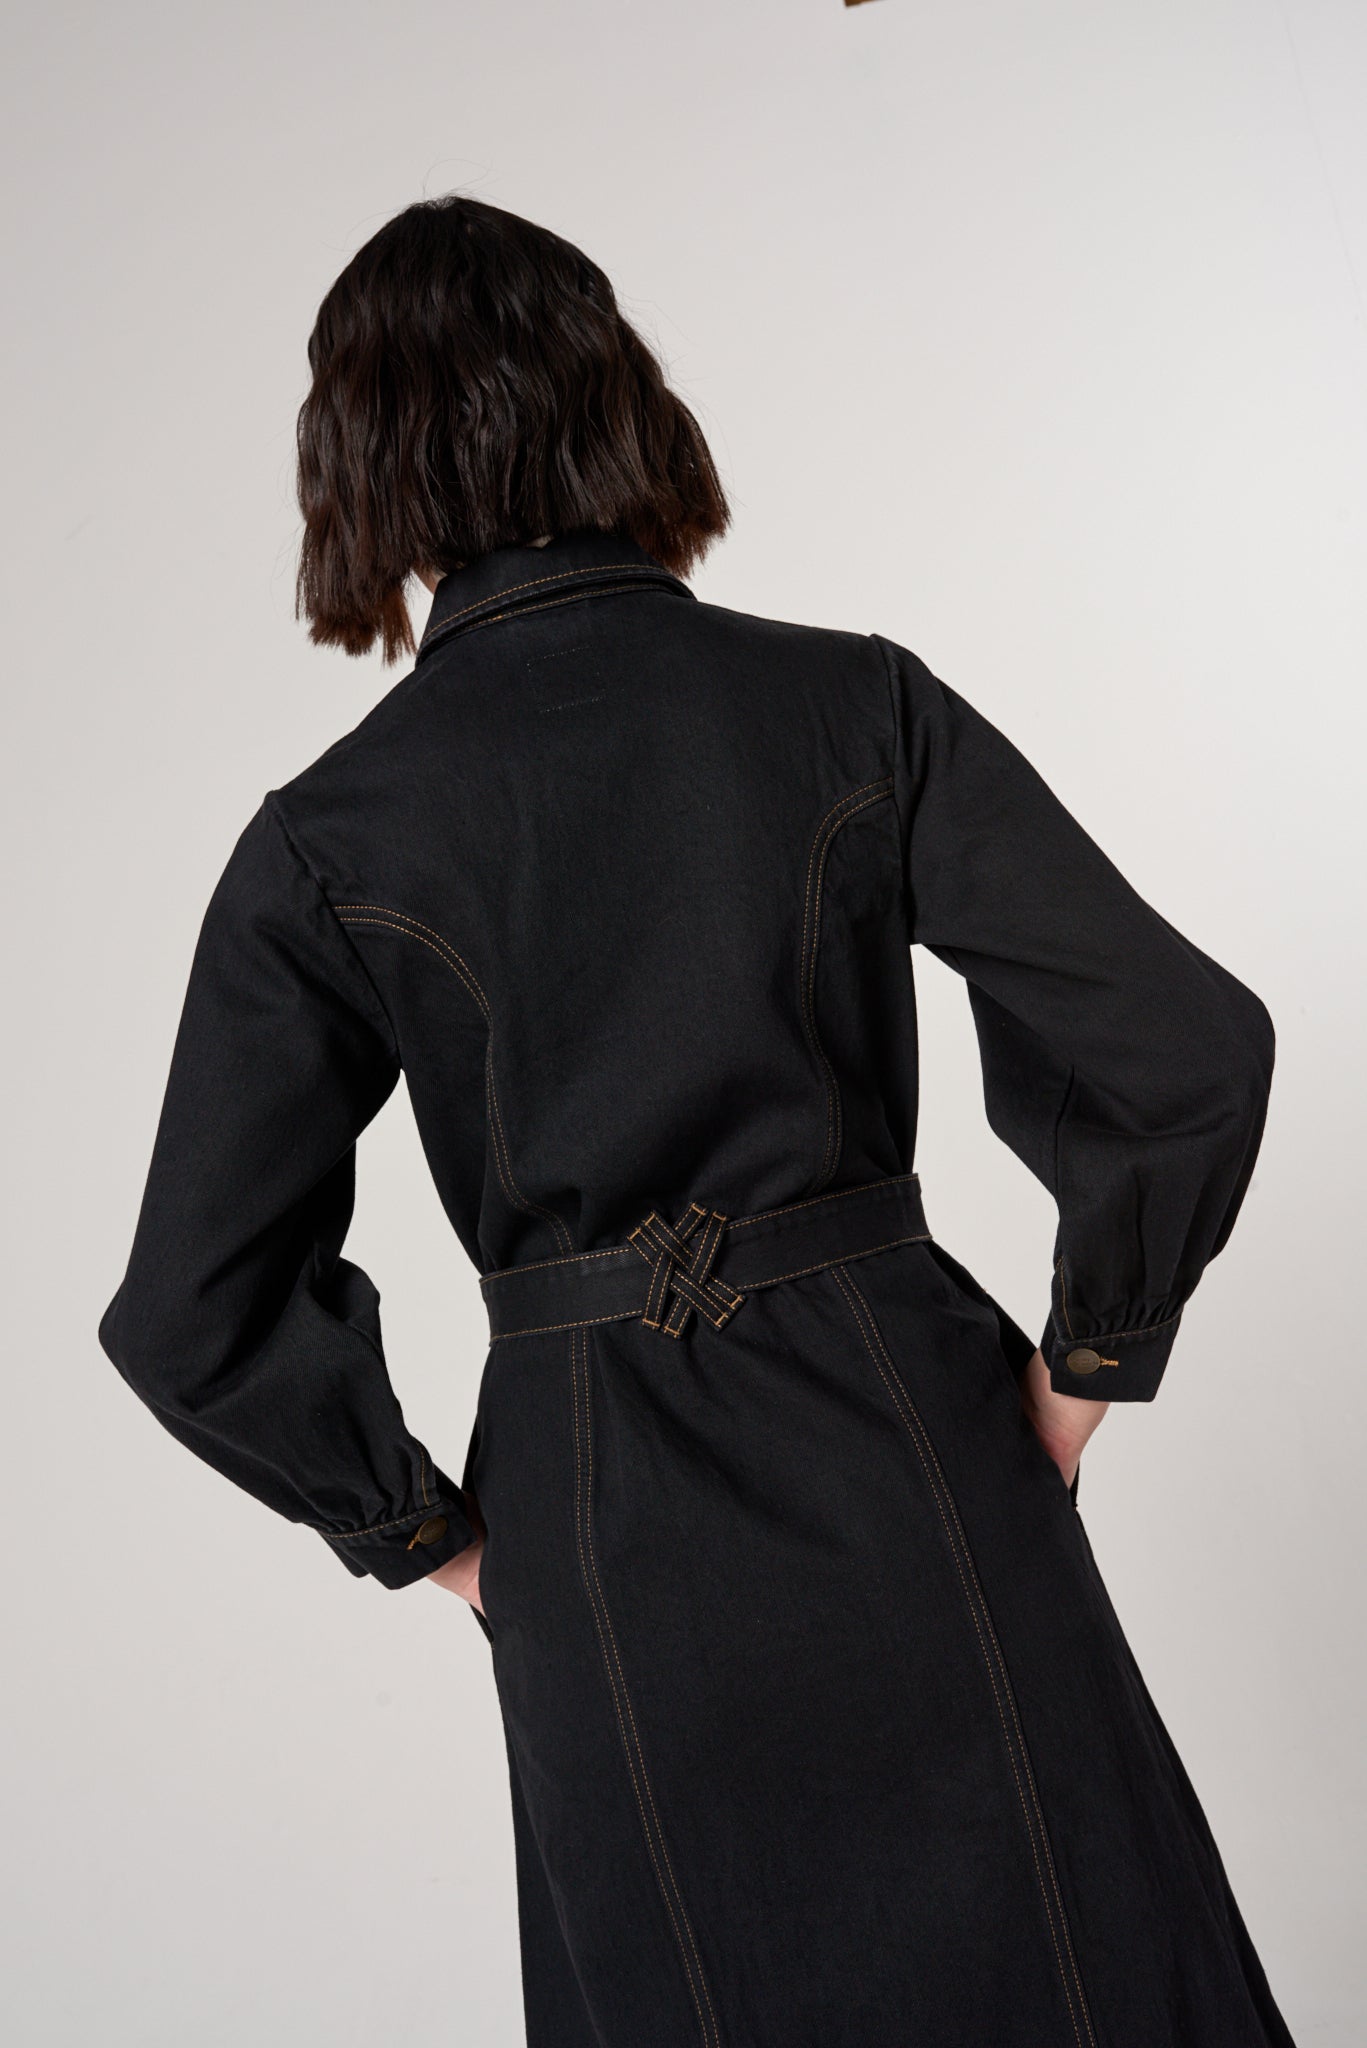 Willow Trench Coat in Black Denim - seventy + mochi